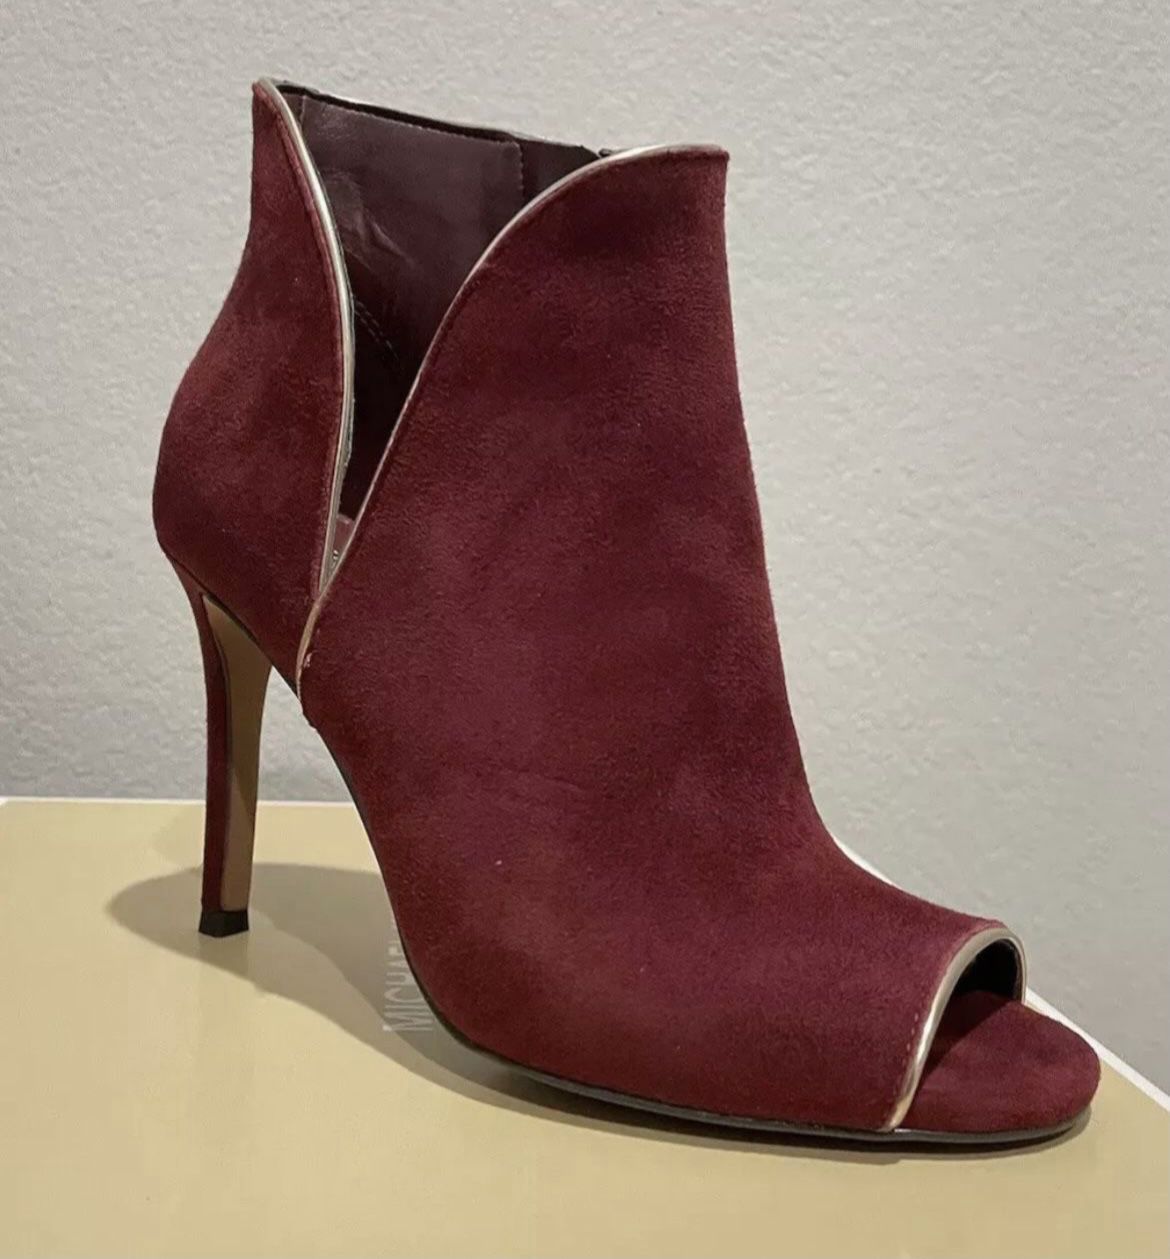 Michael Kors Women’s Suede Open-Toe Ankle Red Boots Heels With Golden Zipper Harper Booties Size 5